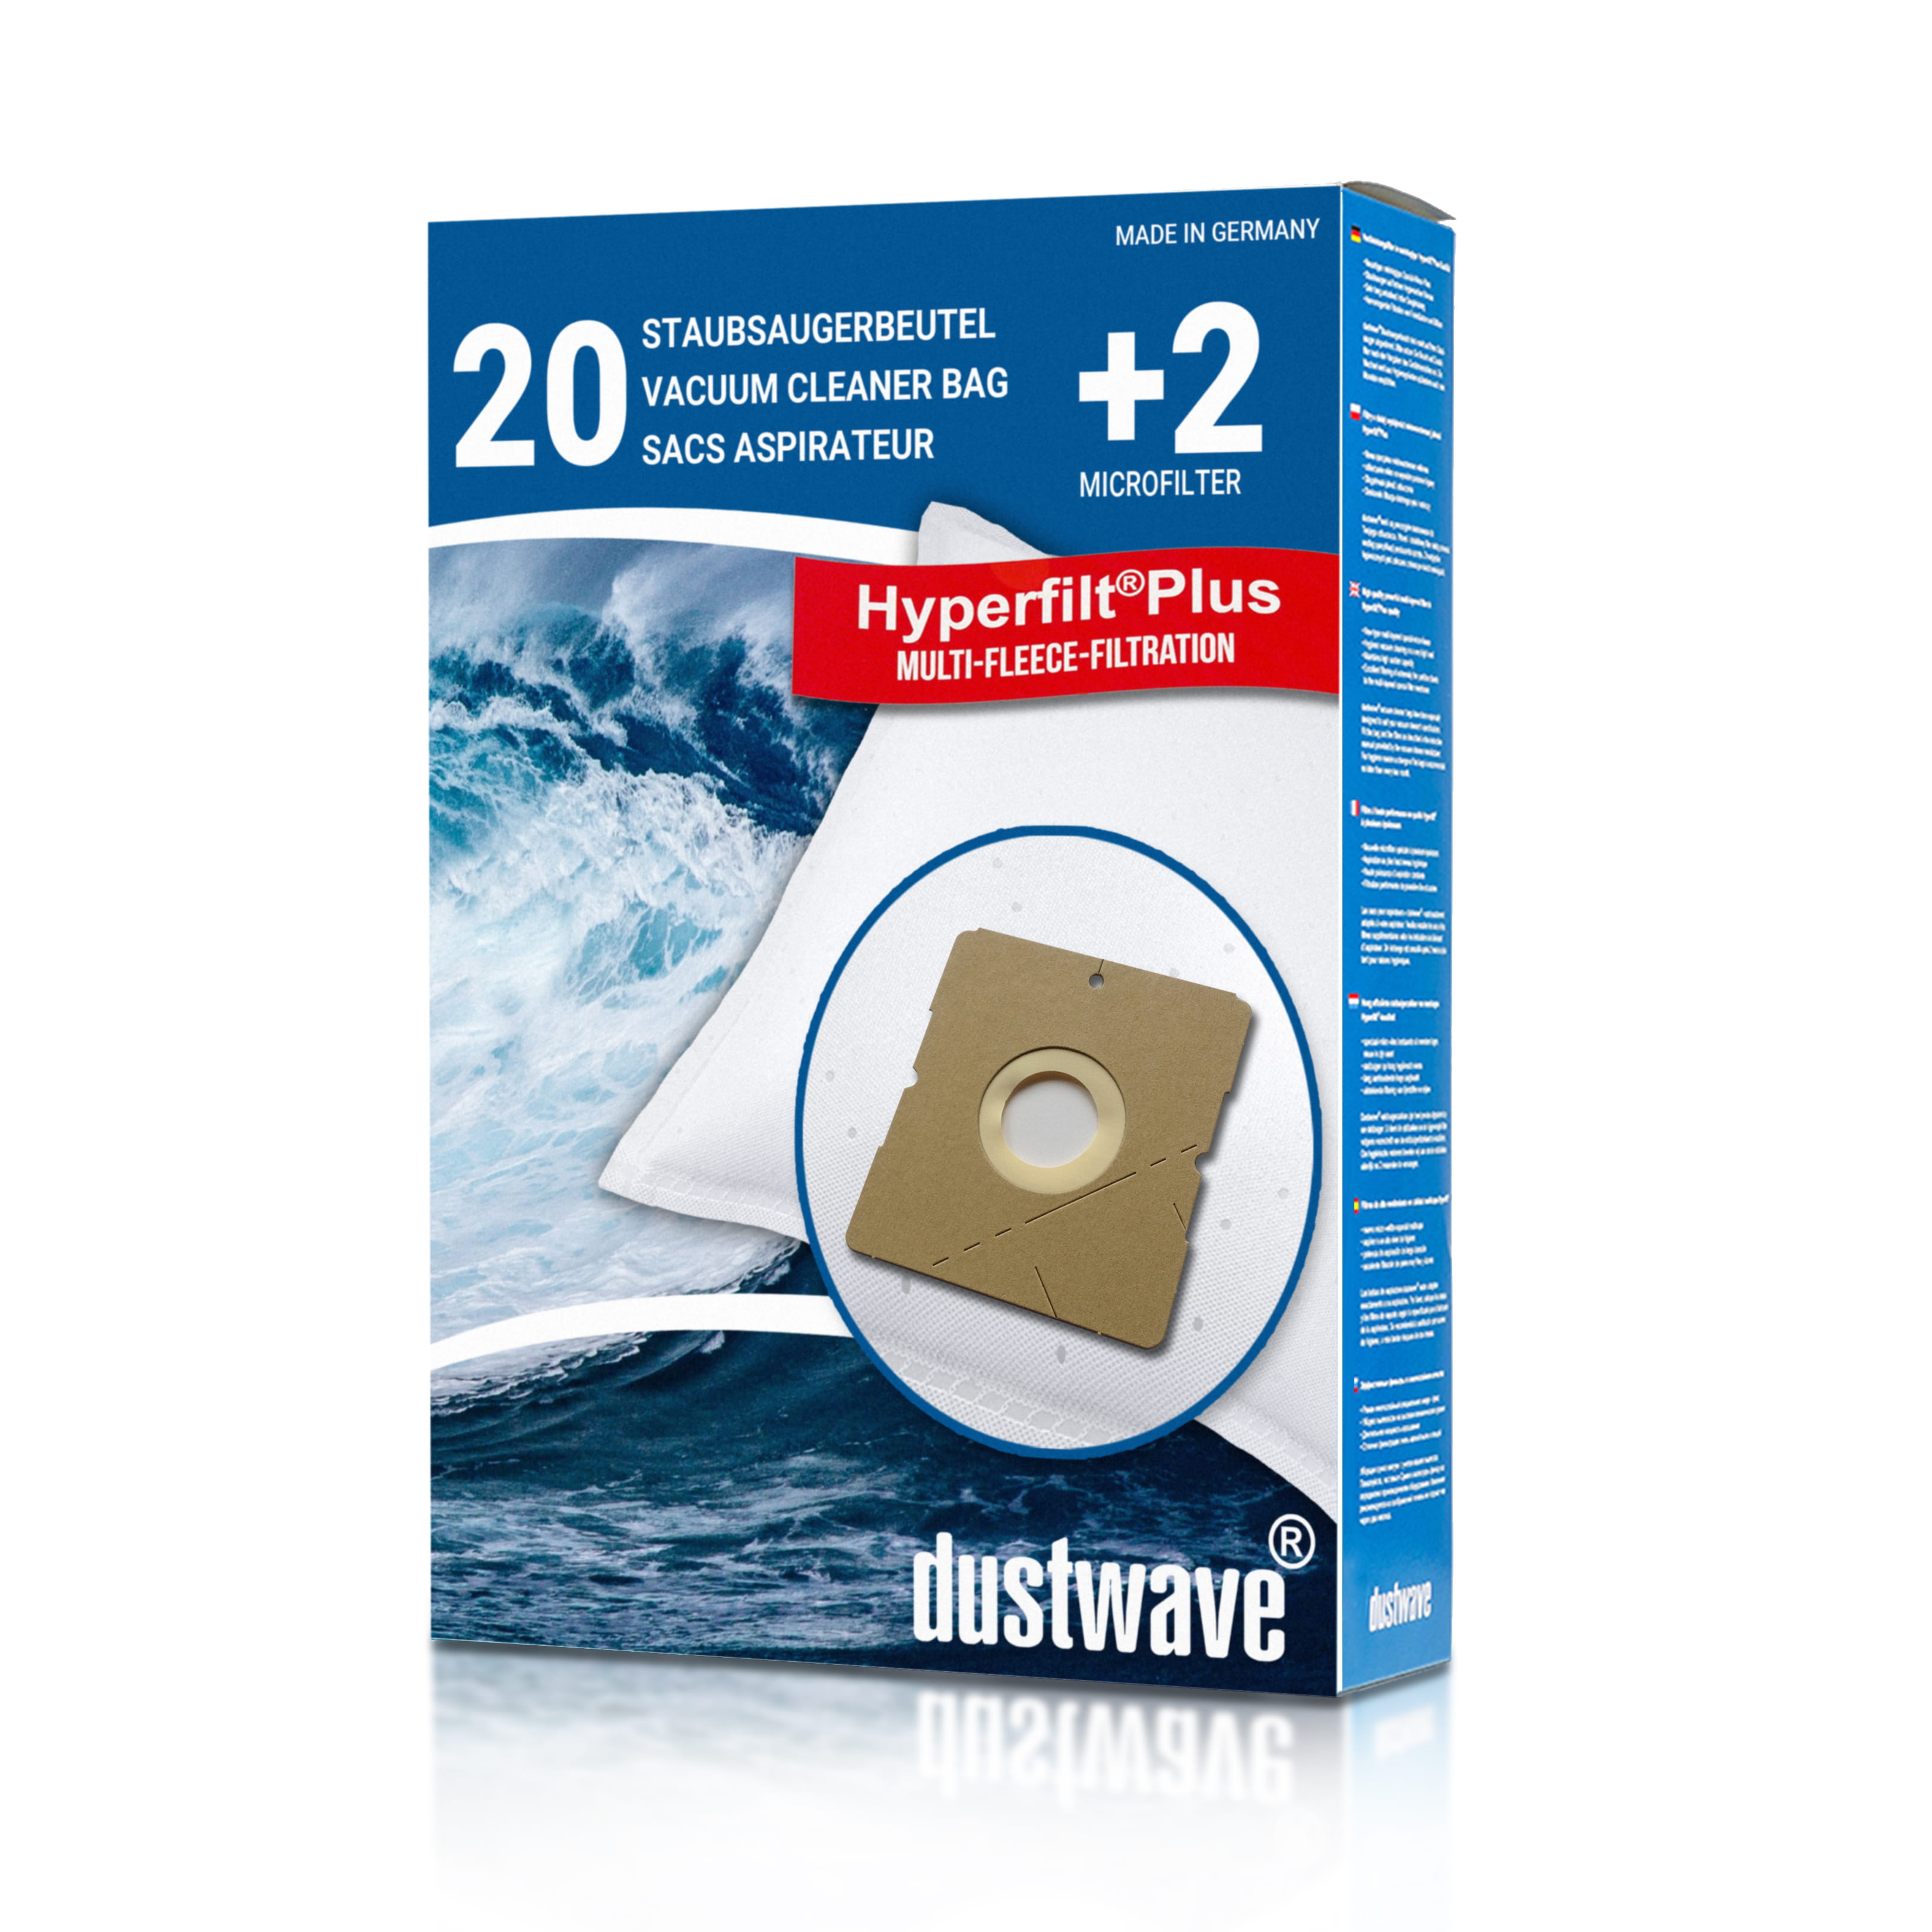 Dustwave® 20 Staubsaugerbeutel für Hoover SX9541 011 Wet &amp; Dry - hocheffizient, mehrlagiges Mikrovlies mit Hygieneverschluss - Made in Germany